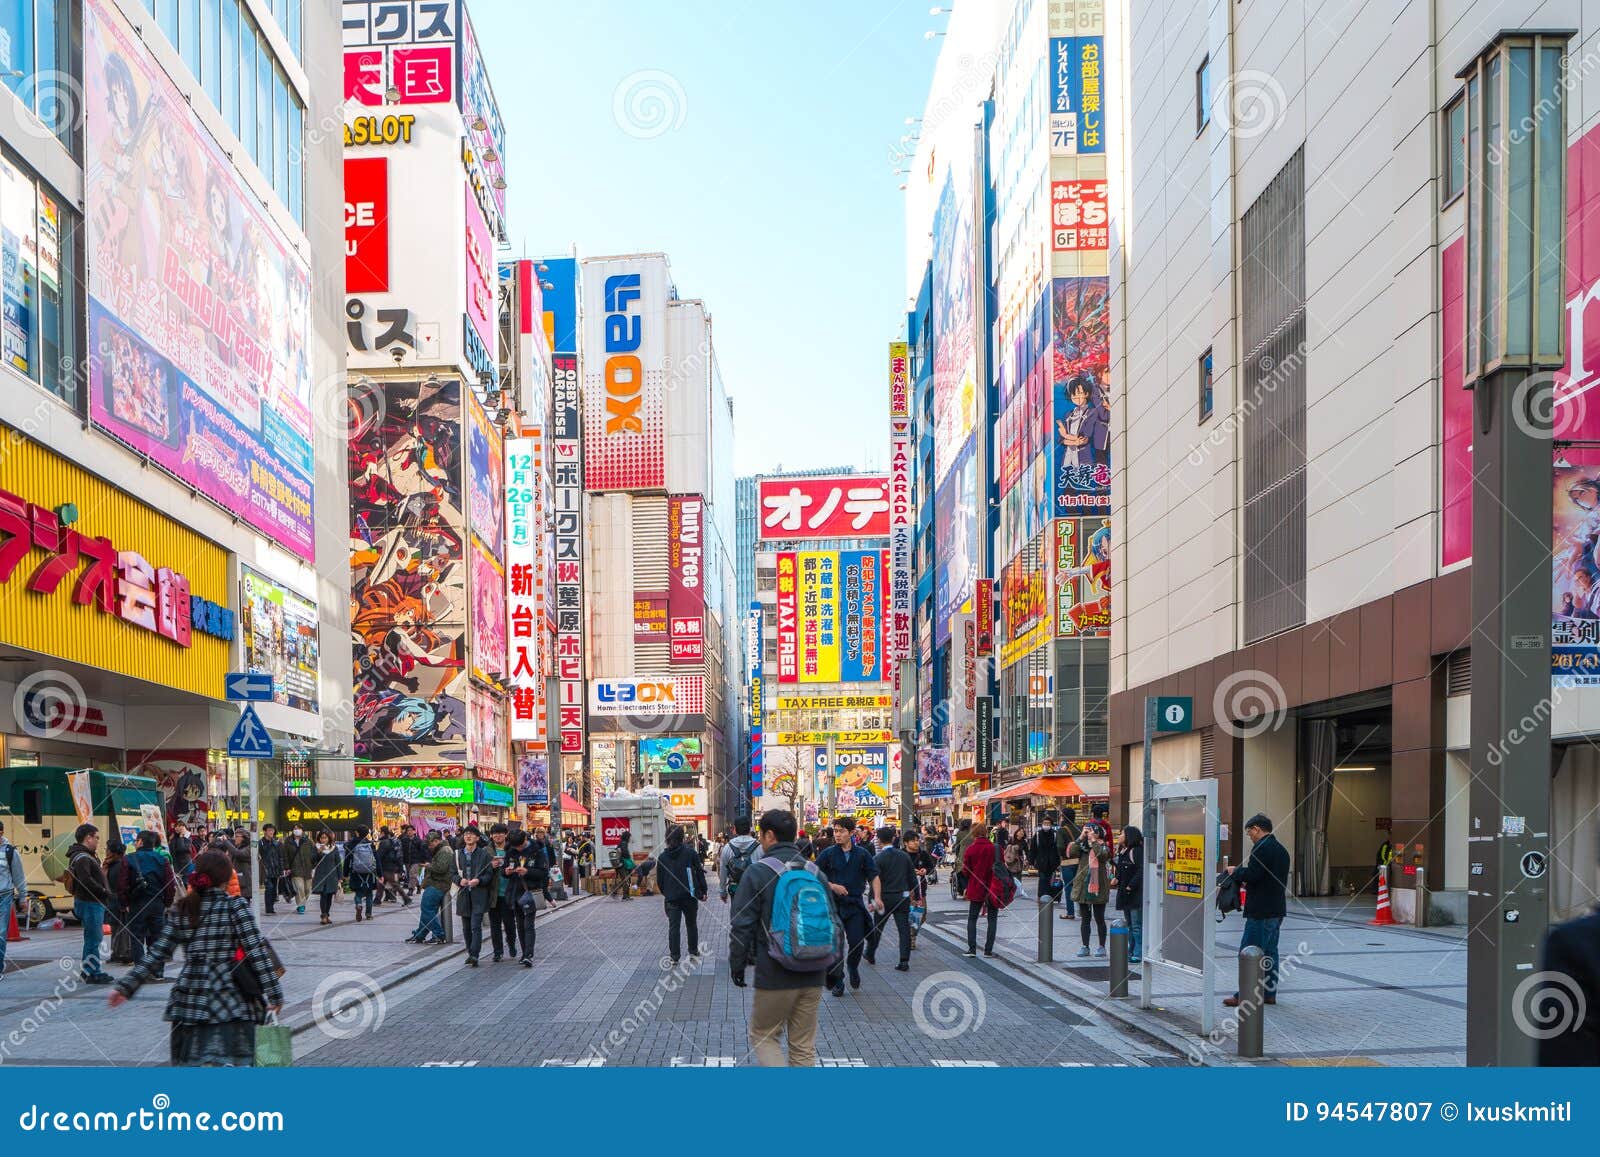 Anime streets at Akihabara  Tripcom Tokyo